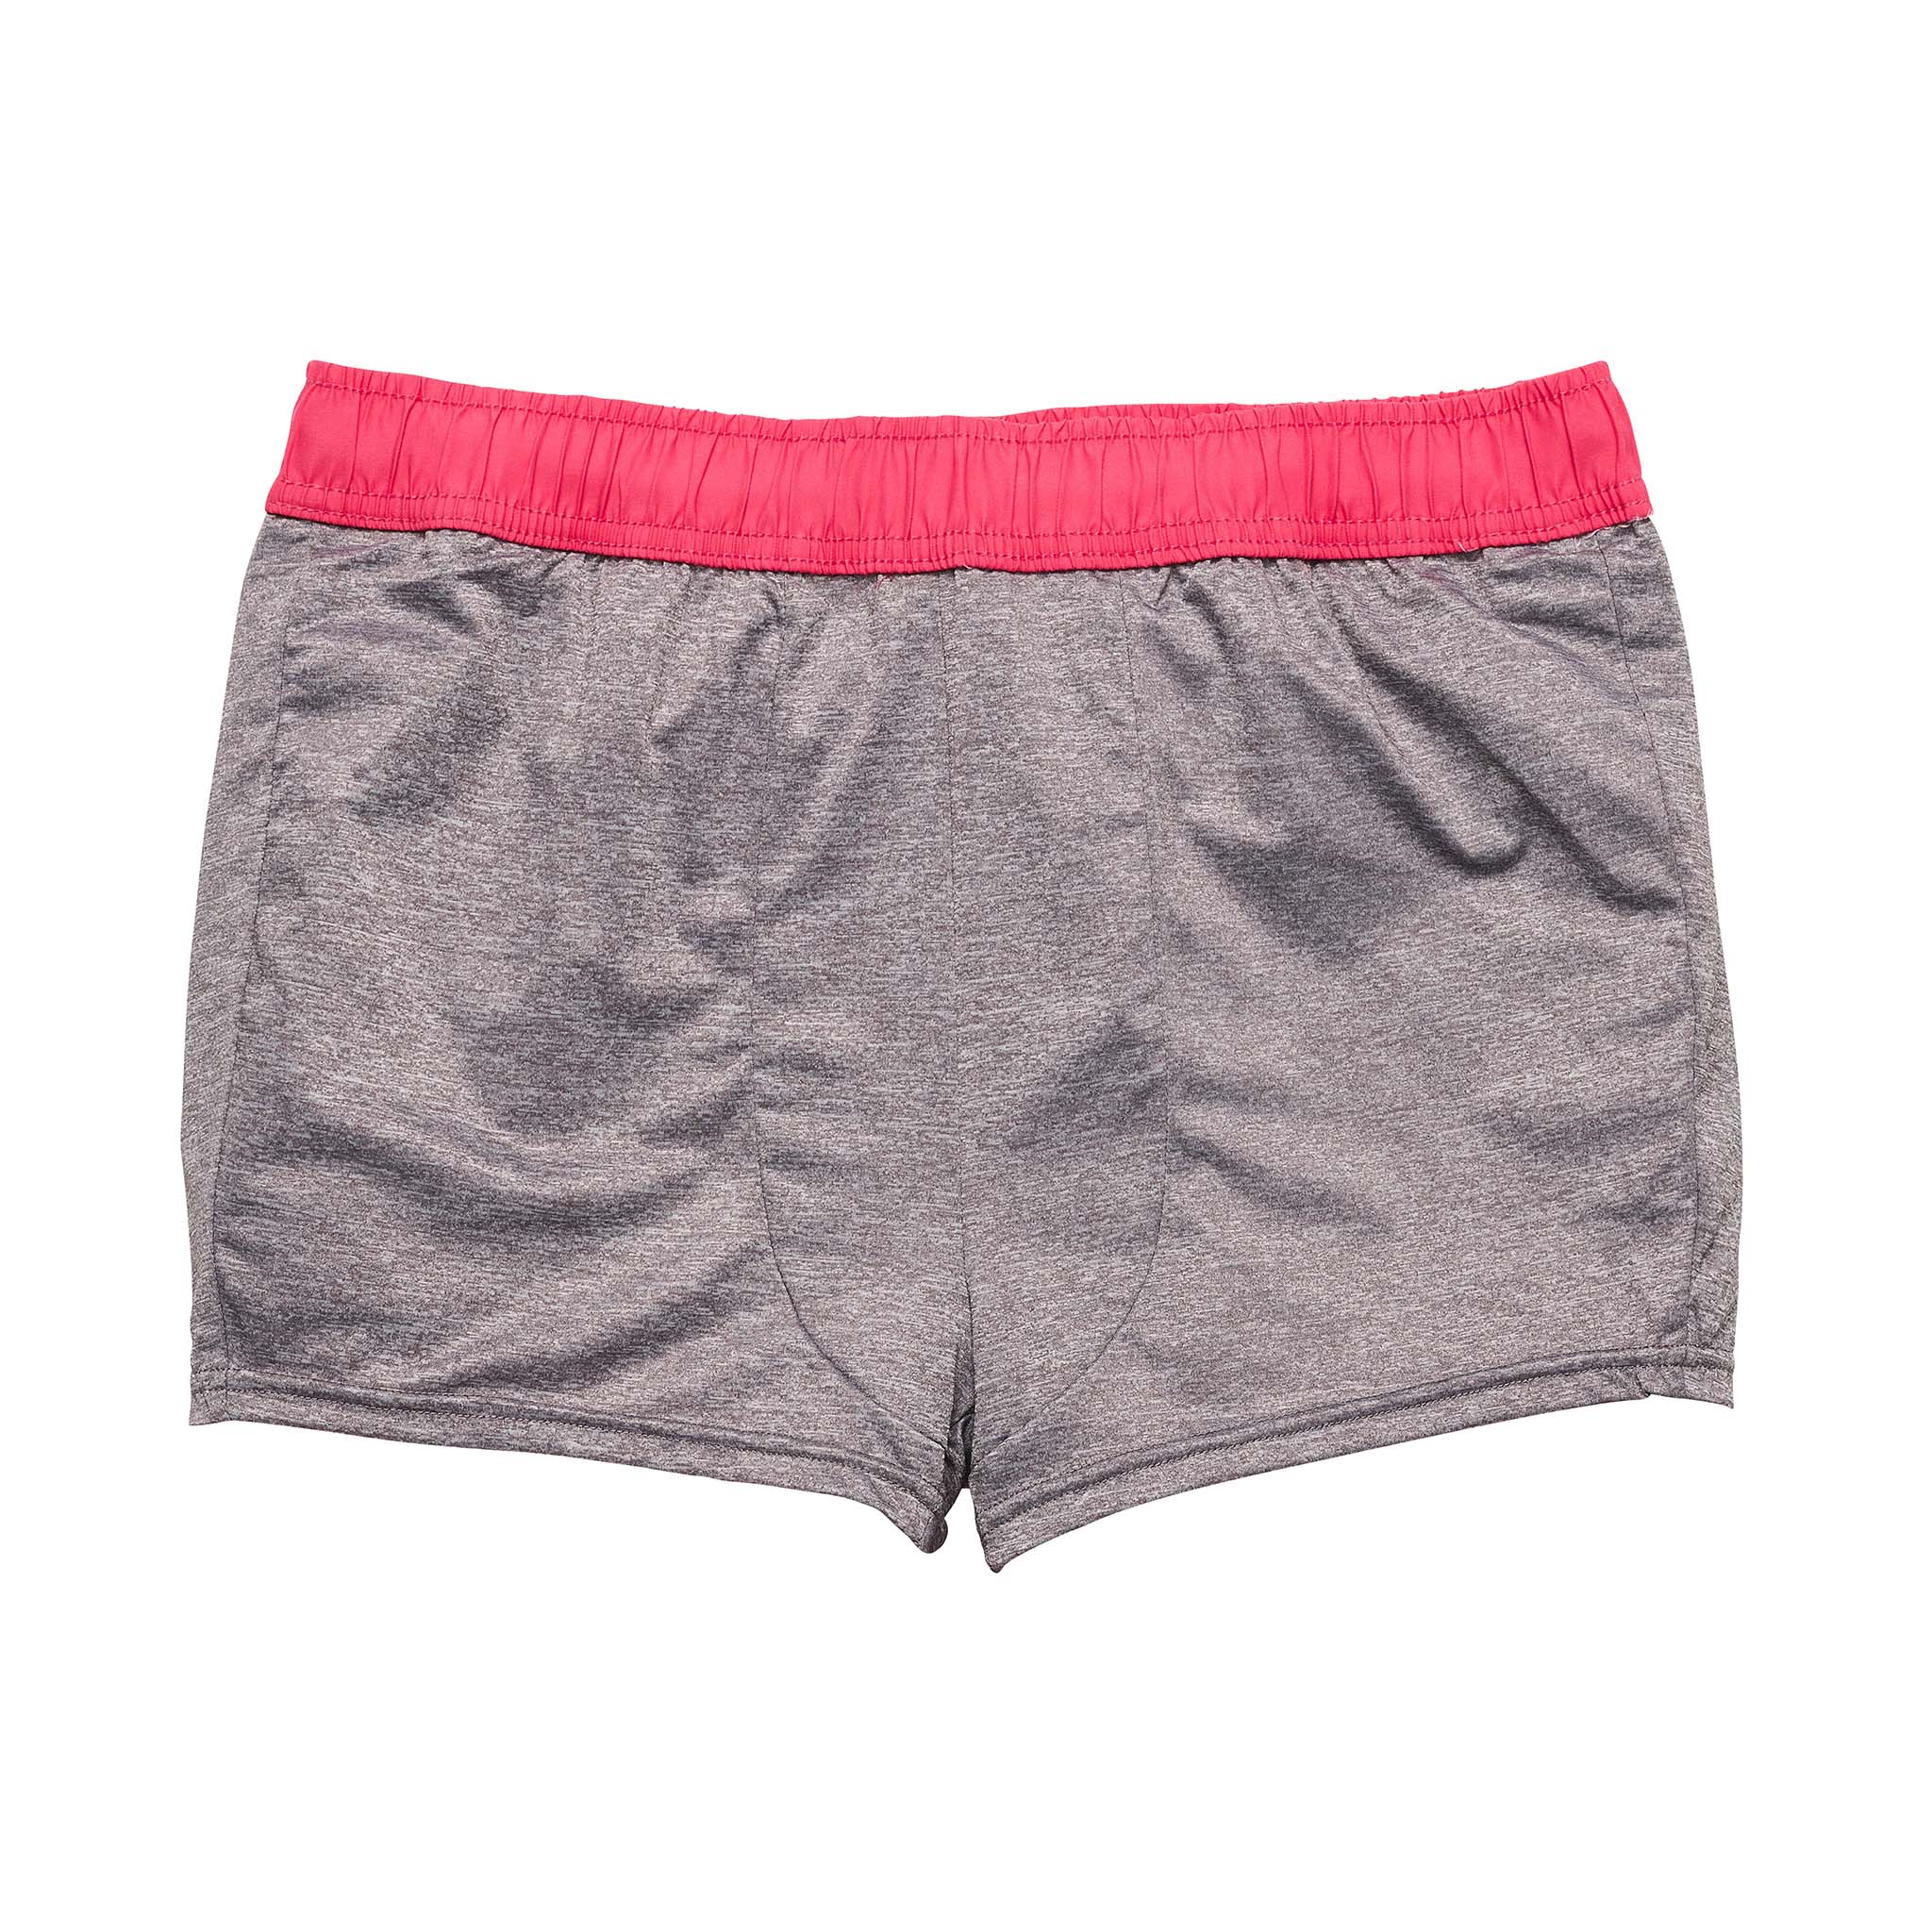 Vintage Red Comfort Lined Swim Short Mens